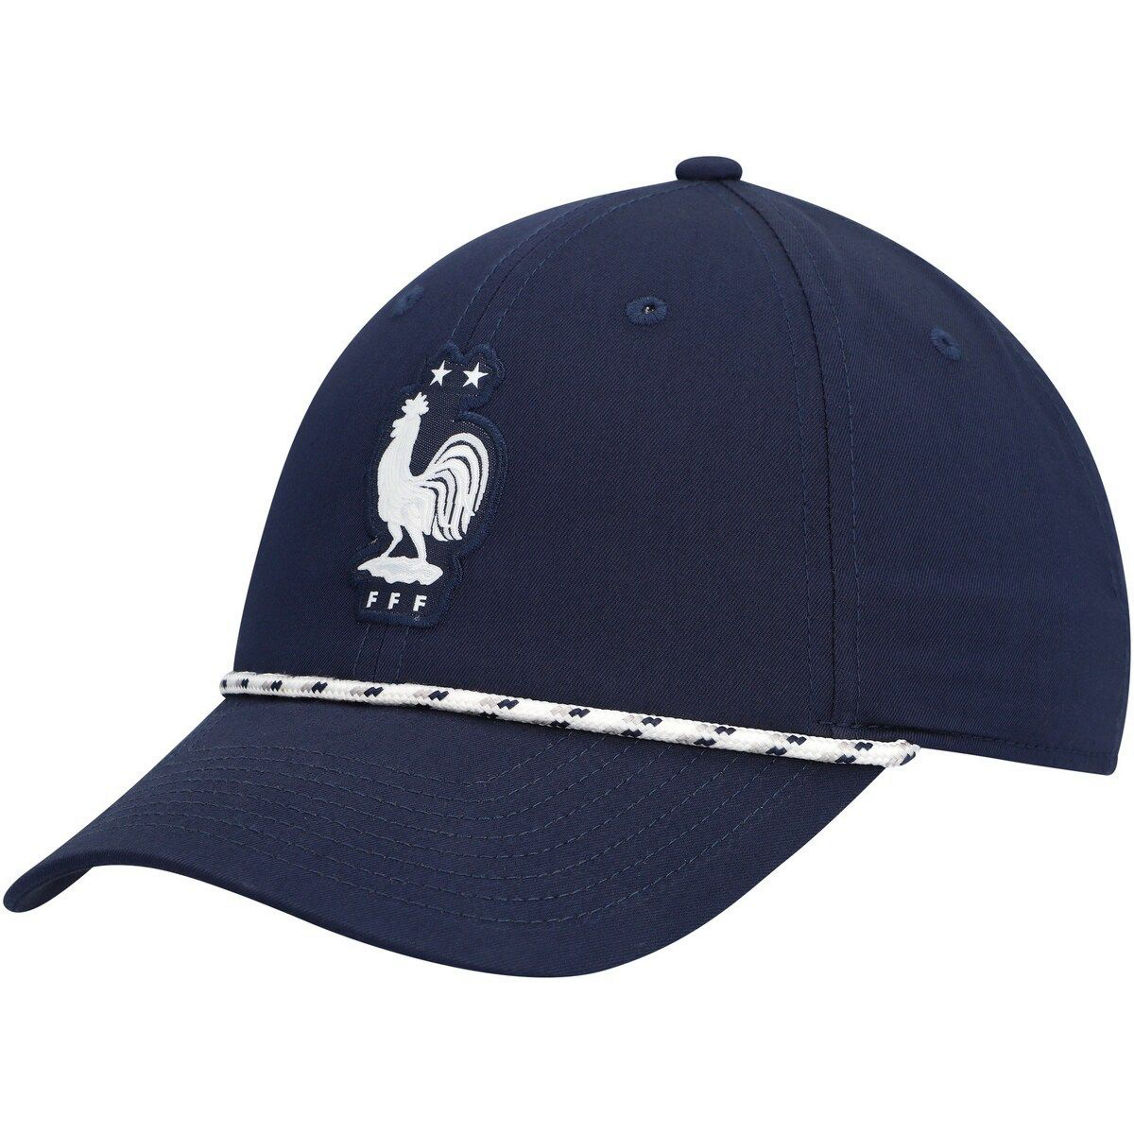 Nike Men's Navy France National Team Golf Legacy91 Adjustable Hat - Image 2 of 4